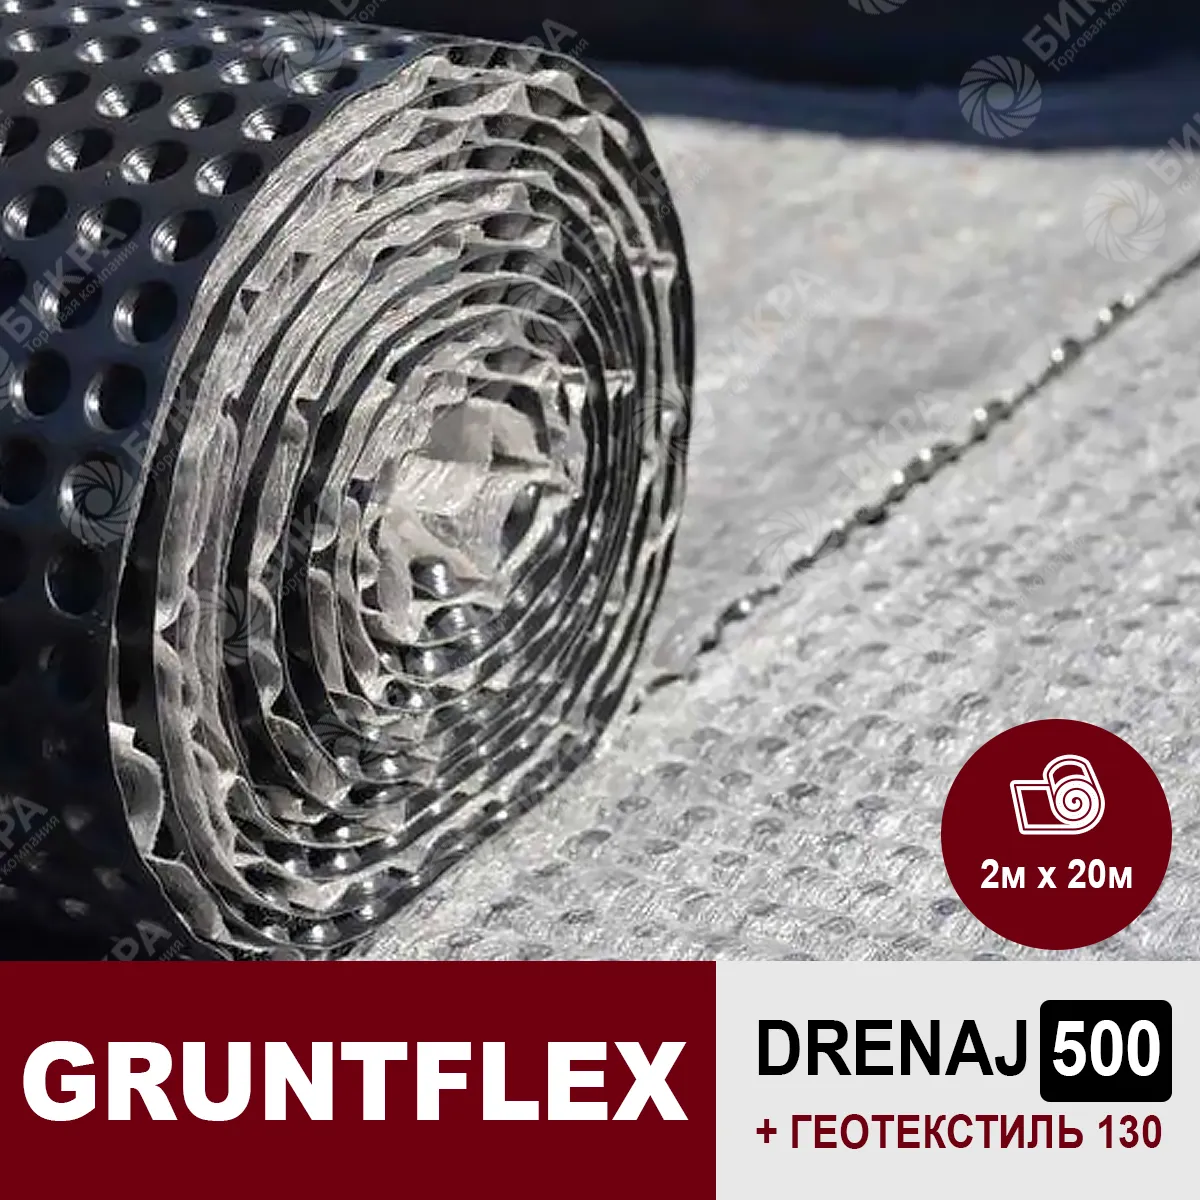 gruntflex drenaj 500 (+130 гео)